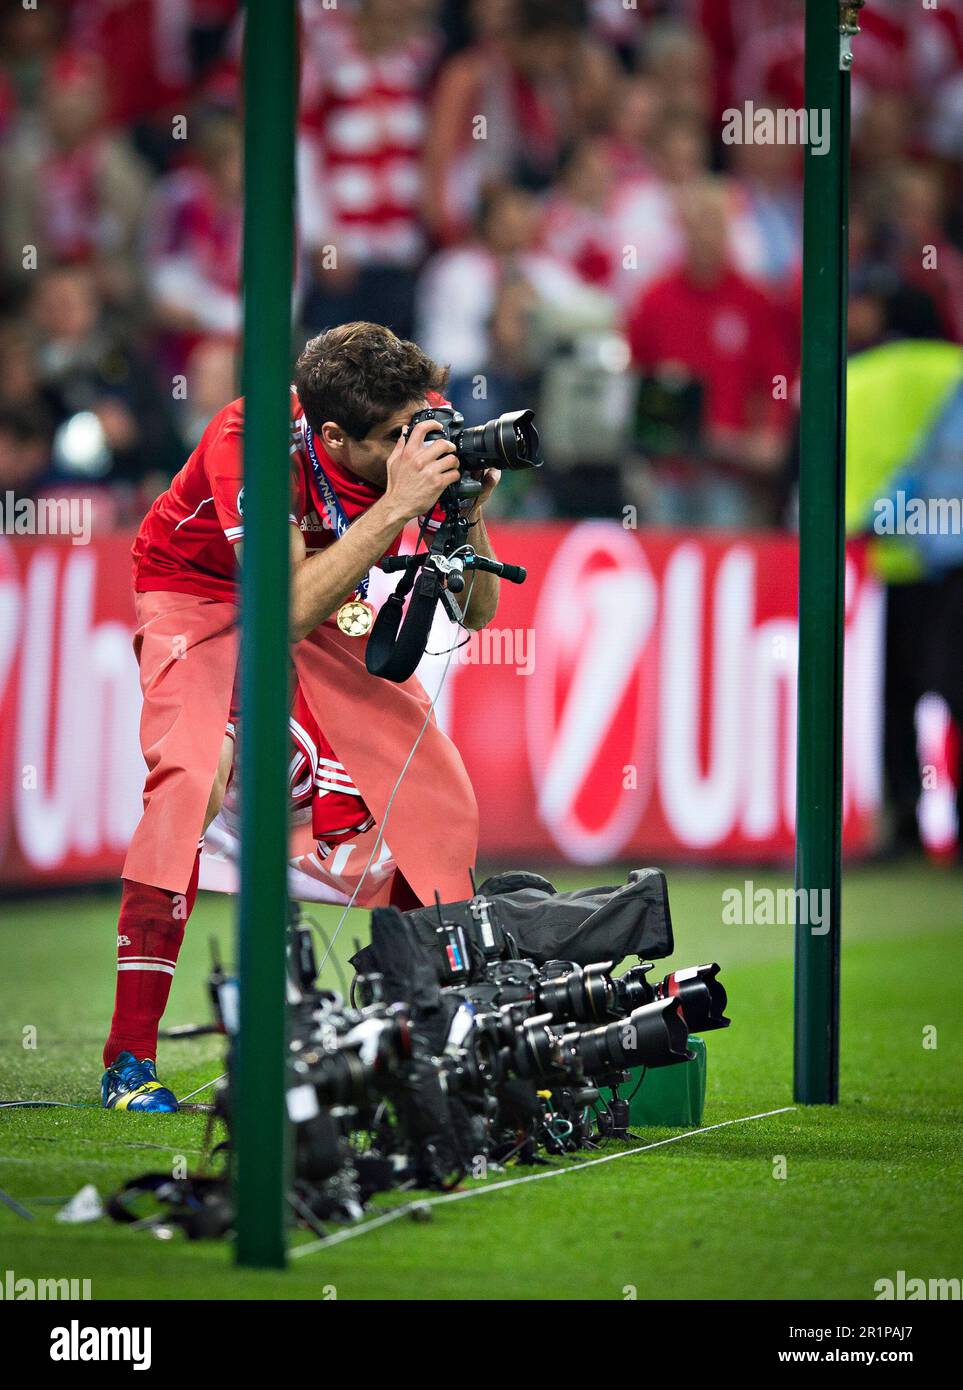 London, 25.05.2013, Wembley MŸnchener Schlussjubel: Javi Martinez (FCB) fotografiert mit einer Nikon Kamera Borussia Dortmund - FC Bayern MŸnchen Cham Stock Photo